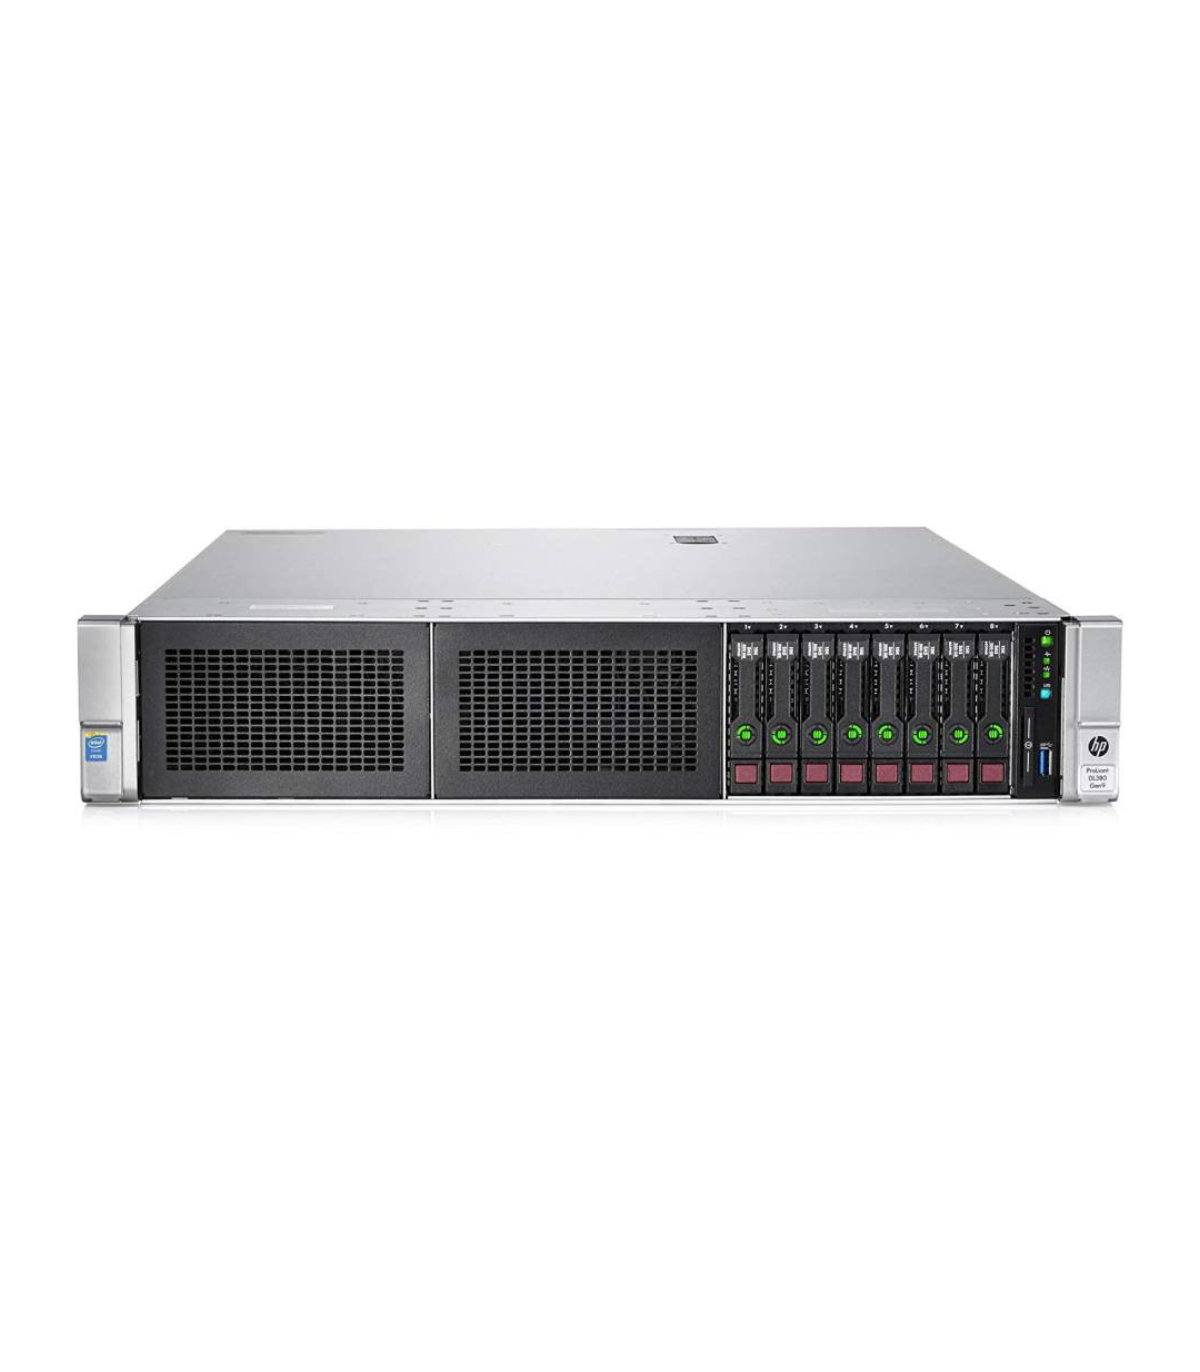 HP DL380 G9 2X8C E5-2630 V3 2.40 GHz 64GB 8X900GB 10k 8X2,5" P440AR 2GB 2X800W ILO4 366FLR SZYNY